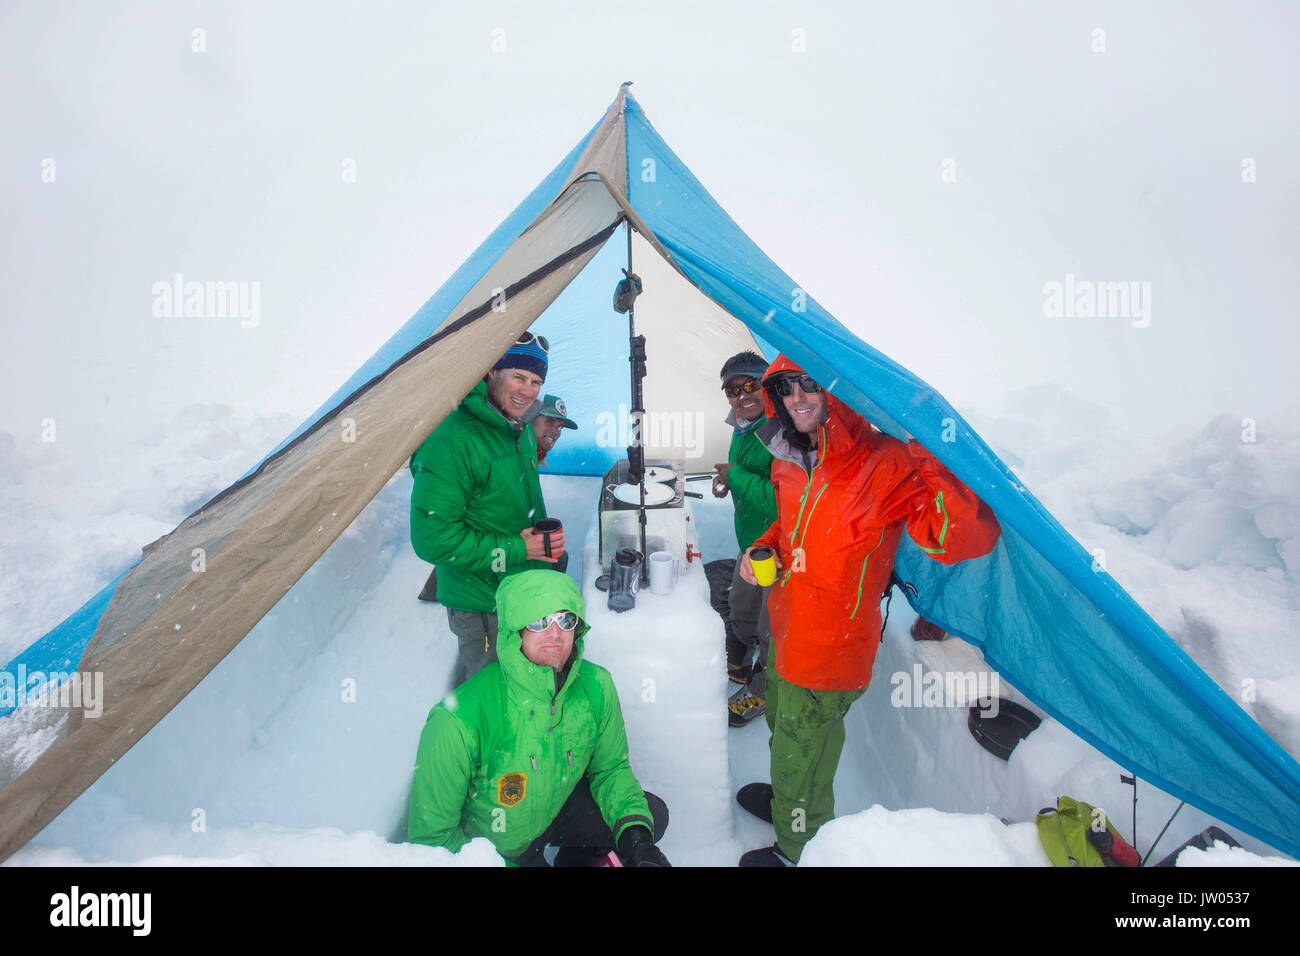 Cinq alpinistes sont à l'abri dans une tente sur le glacier Kahiltna inférieur sur Denali en Alaska. Ils sont en train de fondre la neige pour faire cuire la nourriture et ont les boissons chaudes. Banque D'Images